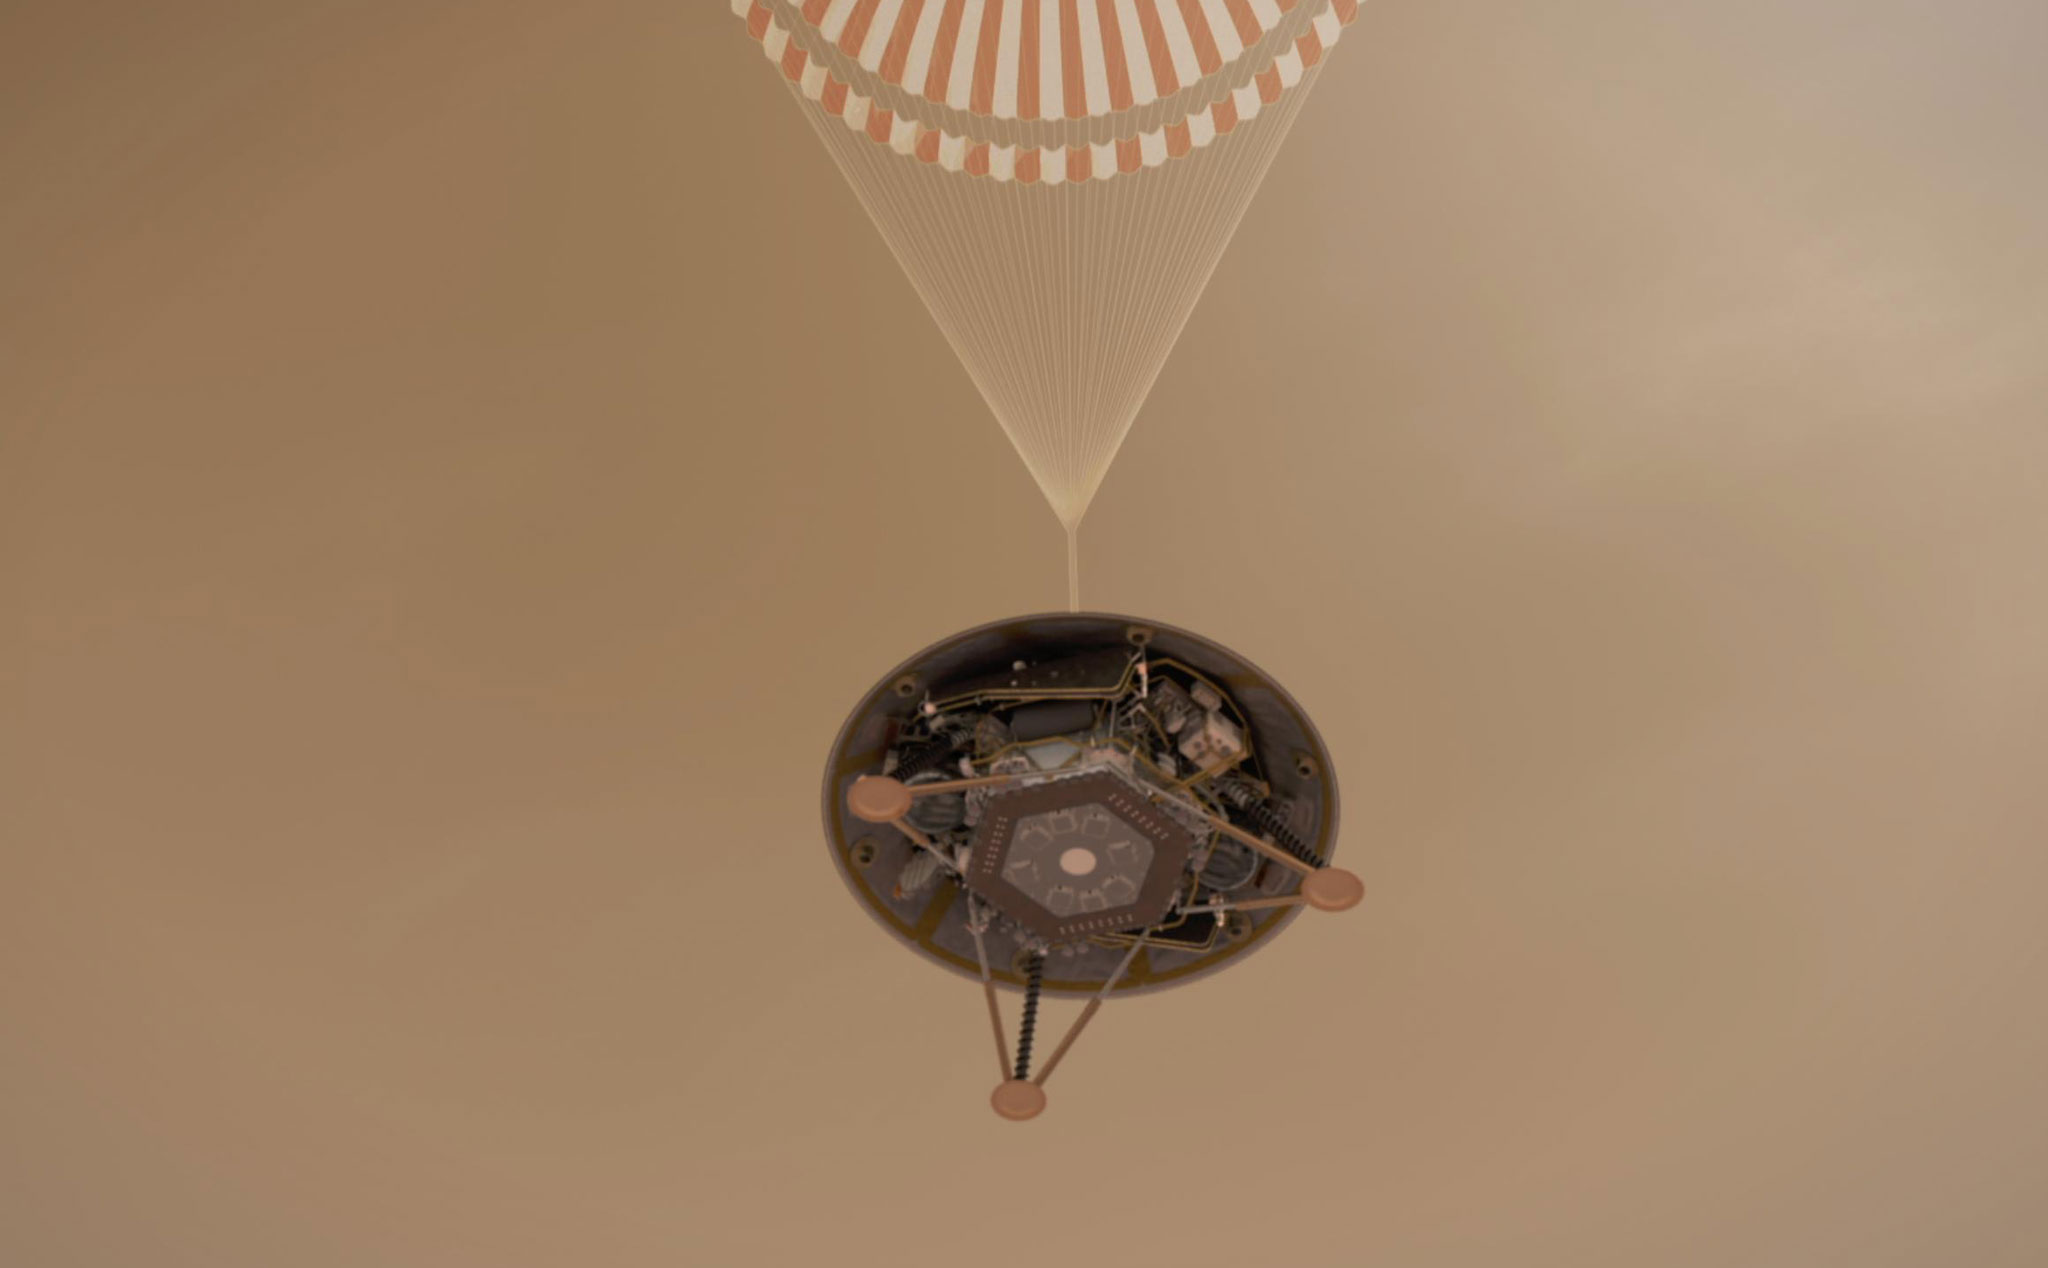 Tàu thăm dò InSight hạ cánh thành công xuống bề mặt sao Hỏa, một kỷ nguyên mới vừa mở ra